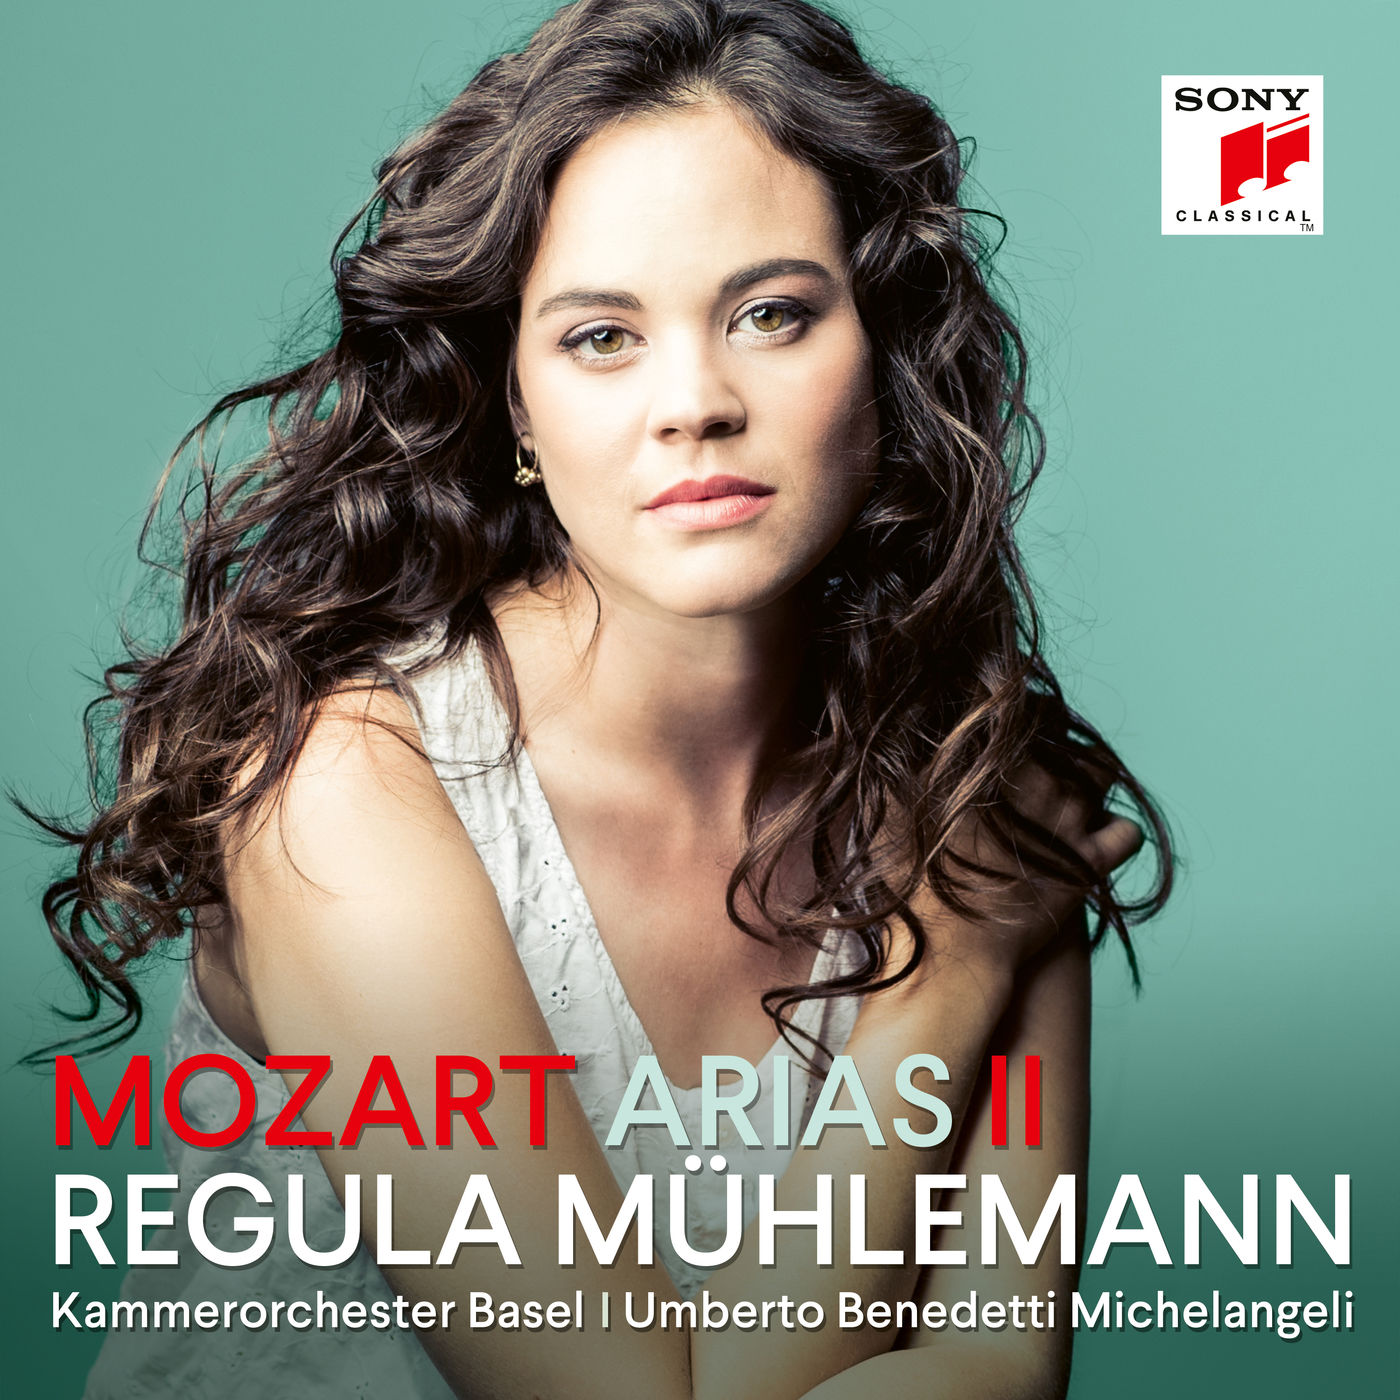 Regula Muhlemann – Mozart Arias II (2020) [FLAC 24bit/96kHz]